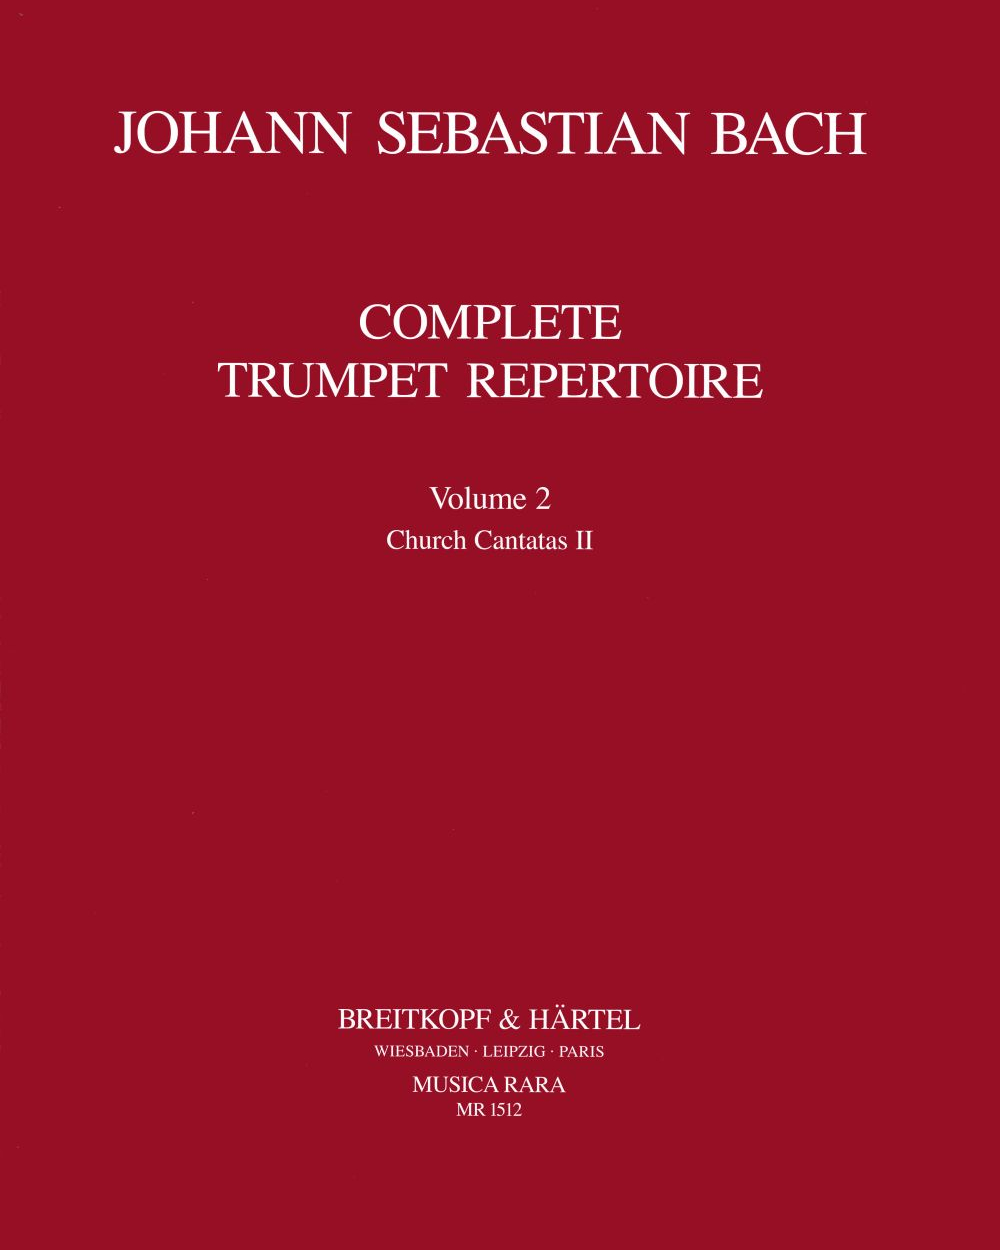 Vollständiges Trompeten-Repertoire, Bd. 2